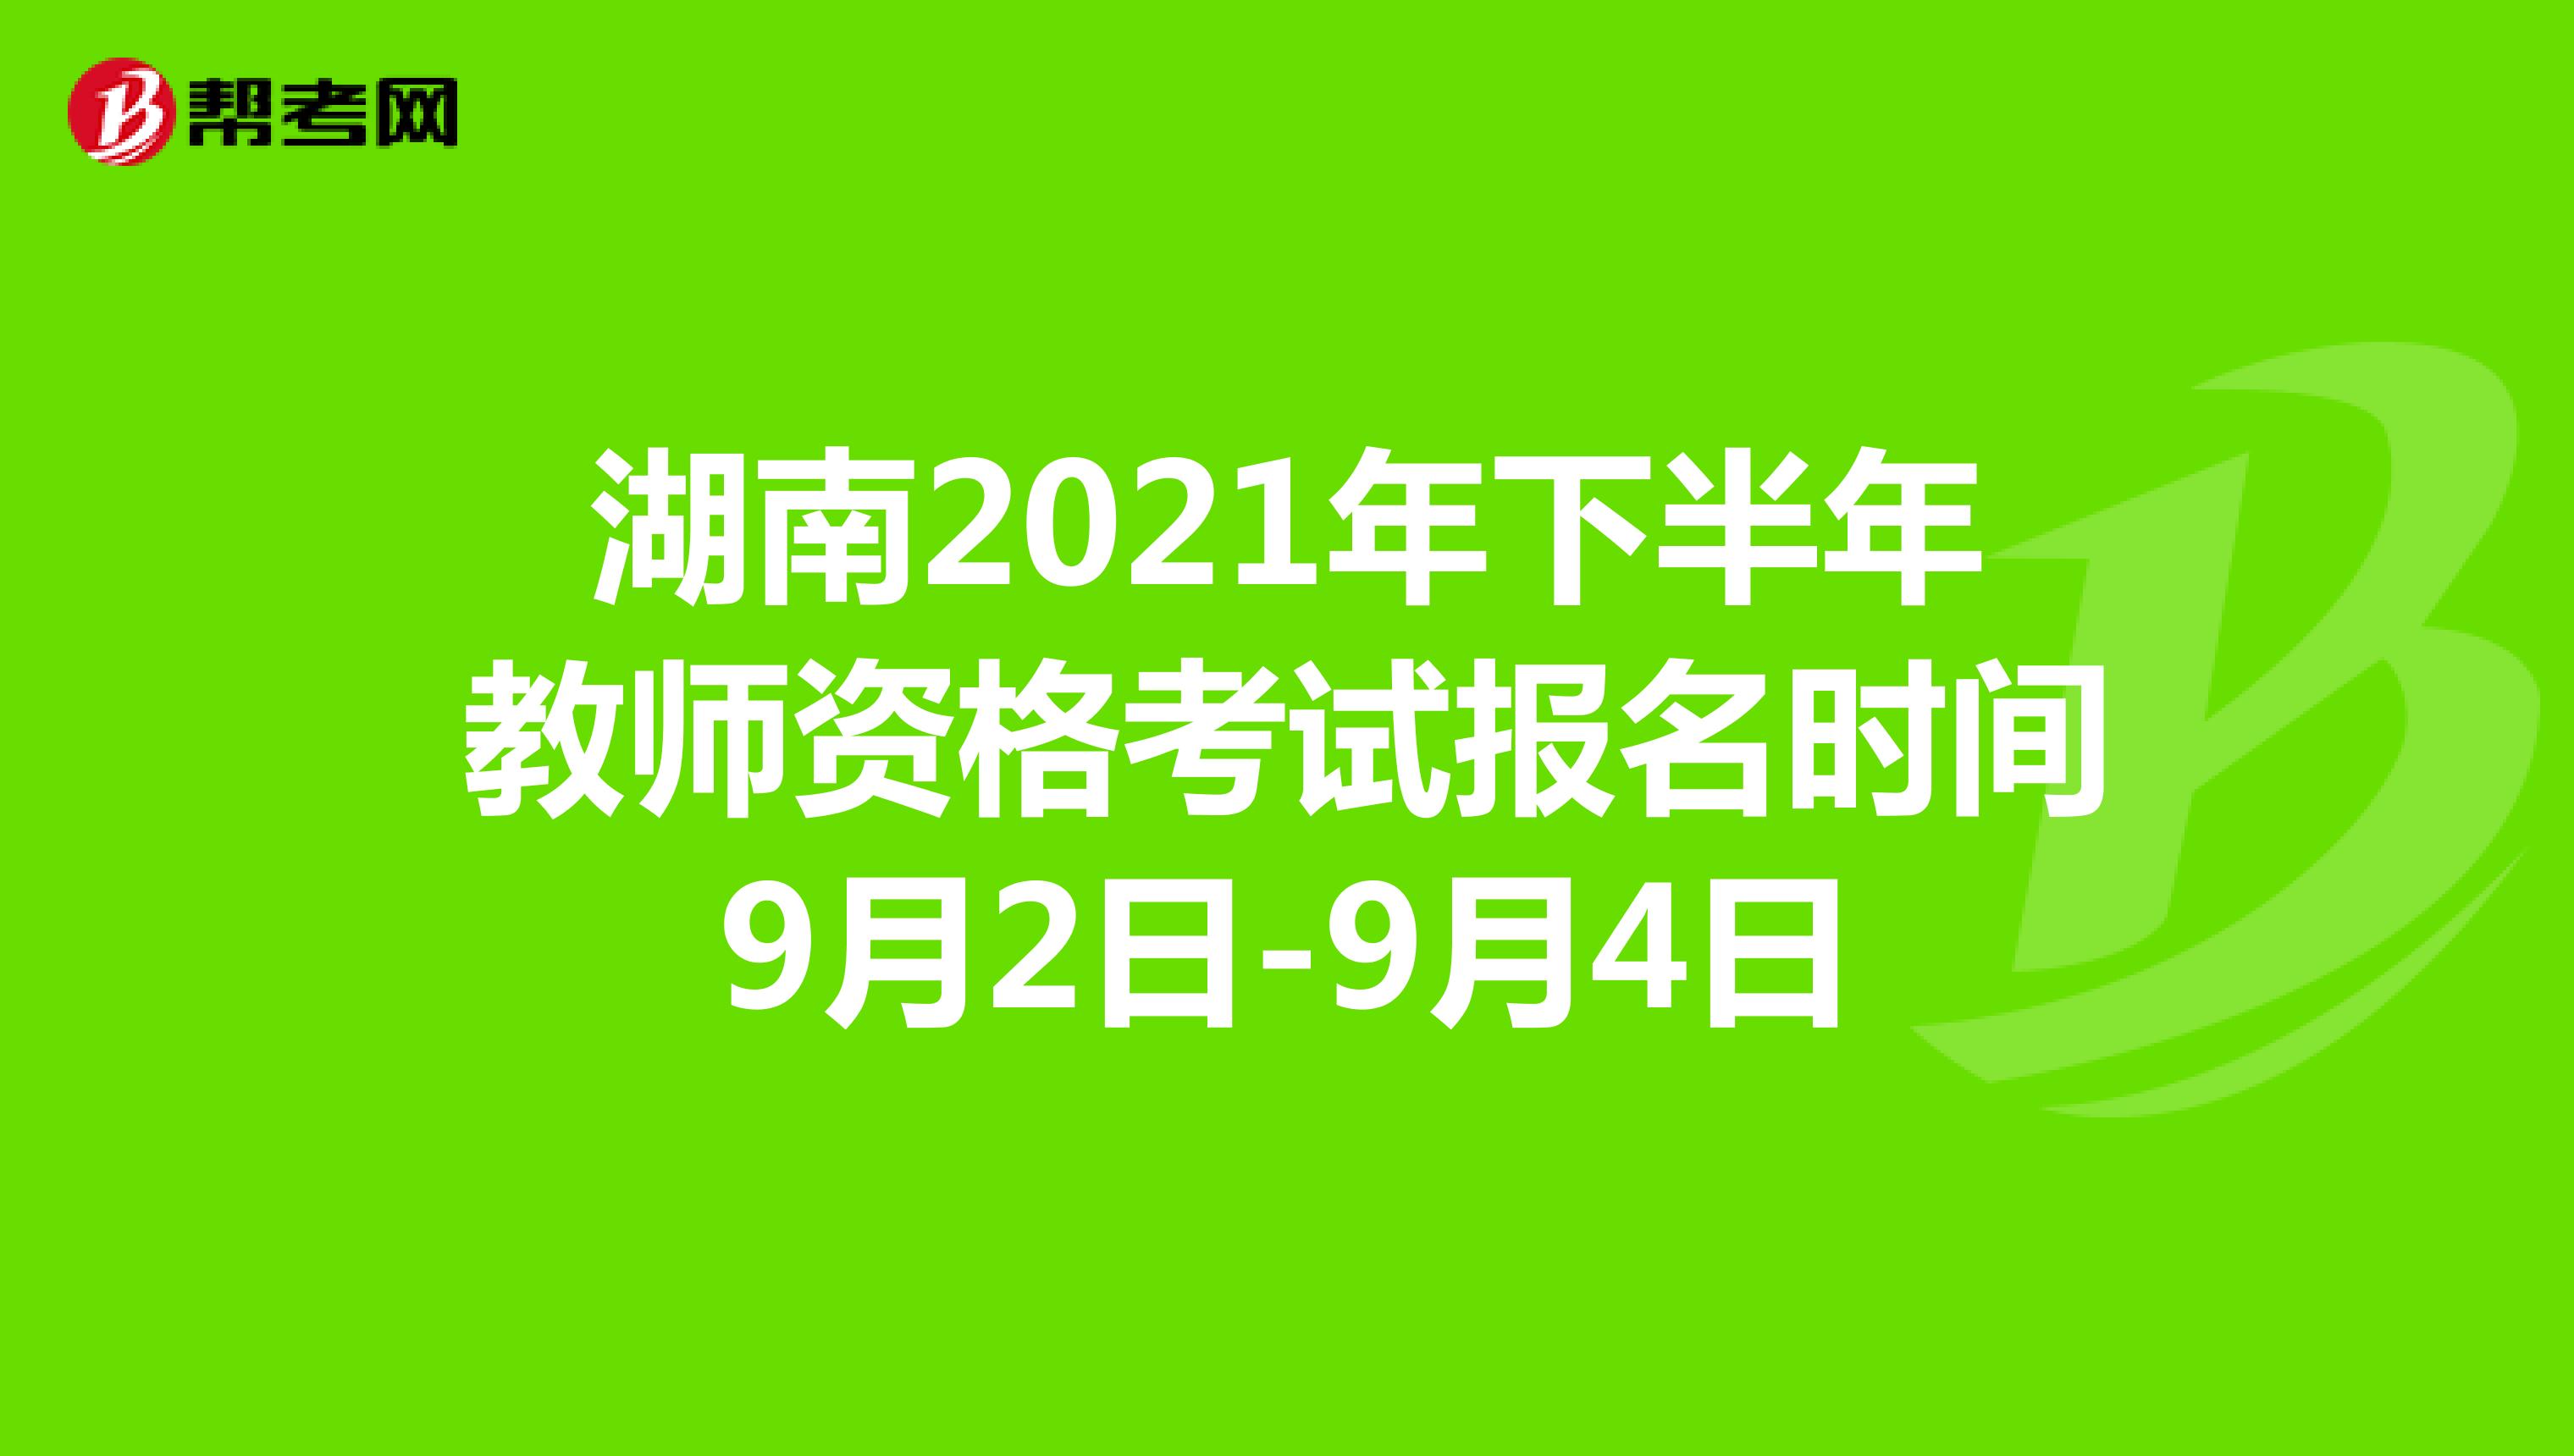 湖南2021年下半年教师资格考试报名时间9月2日-9月4日